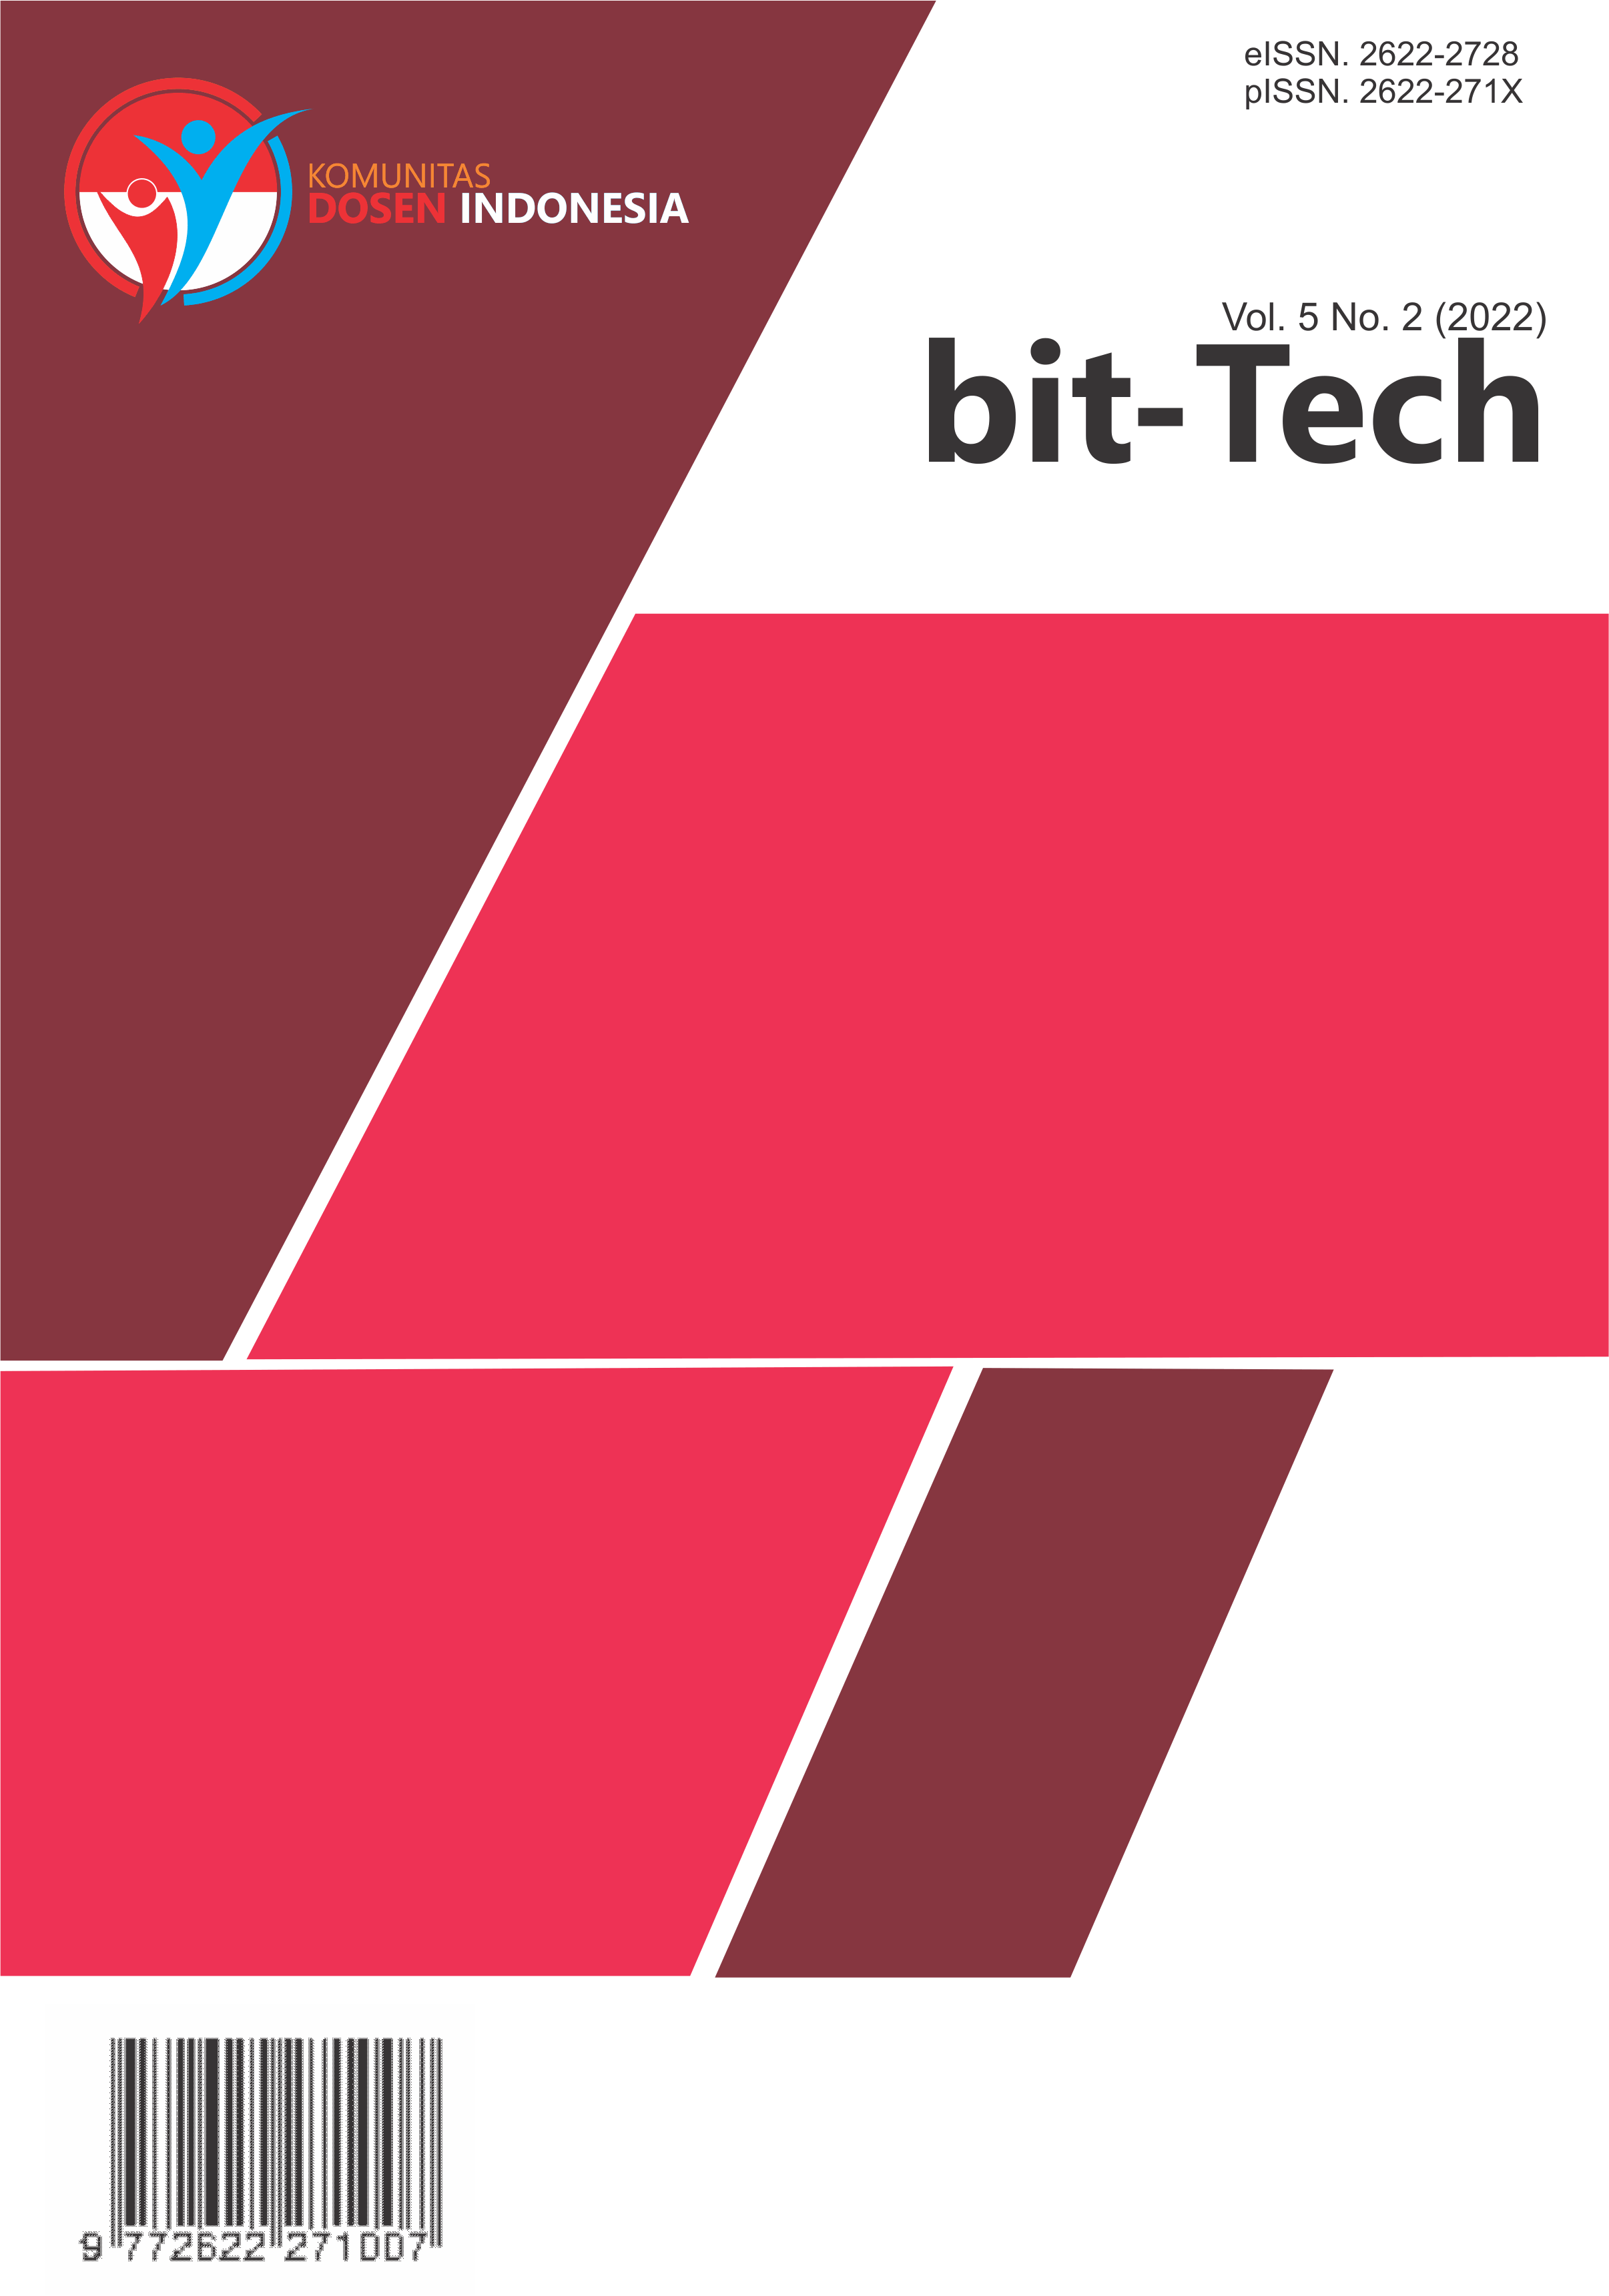 					View Vol. 5 No. 2 (2022): bit-Tech
				